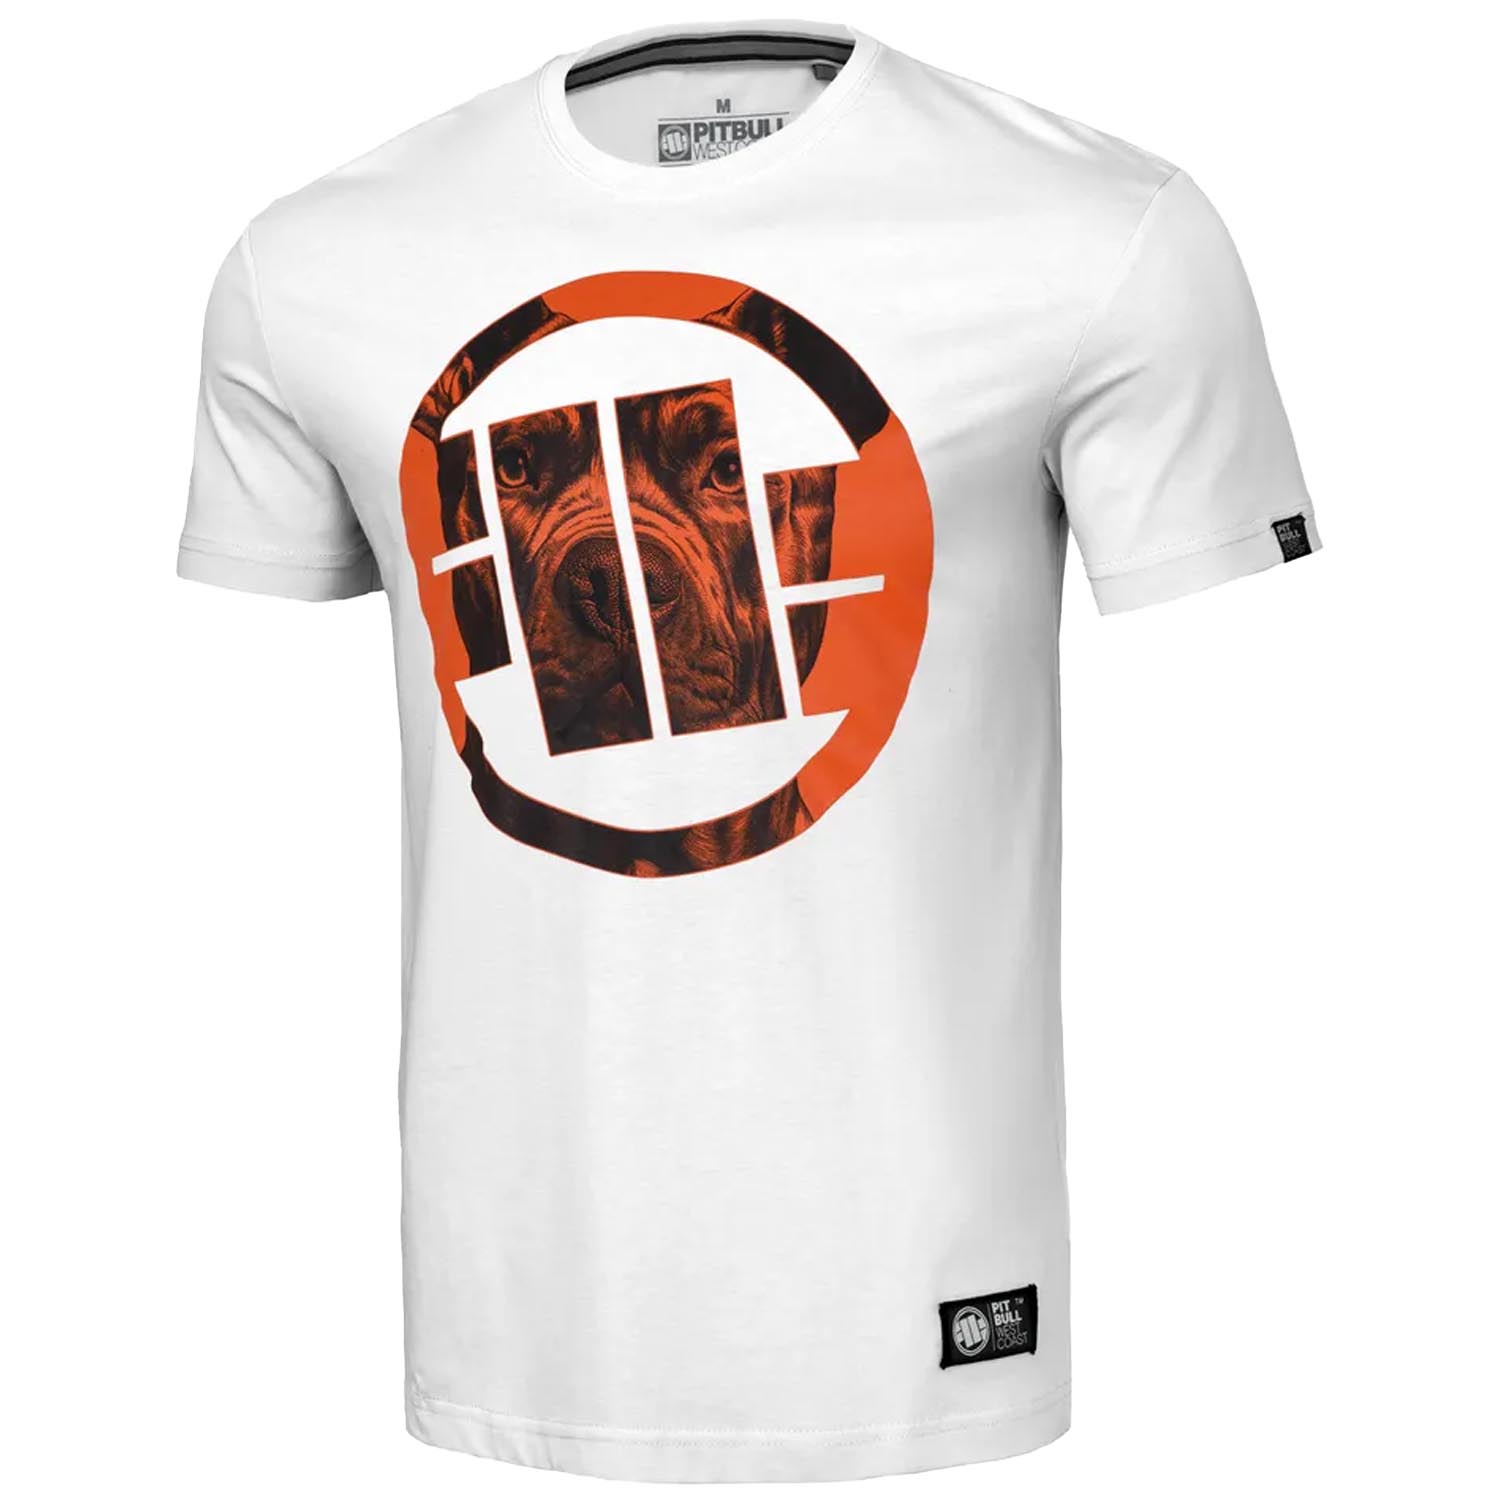 Pit Bull West Coast T-Shirt, Orange Dog 24, white-orange